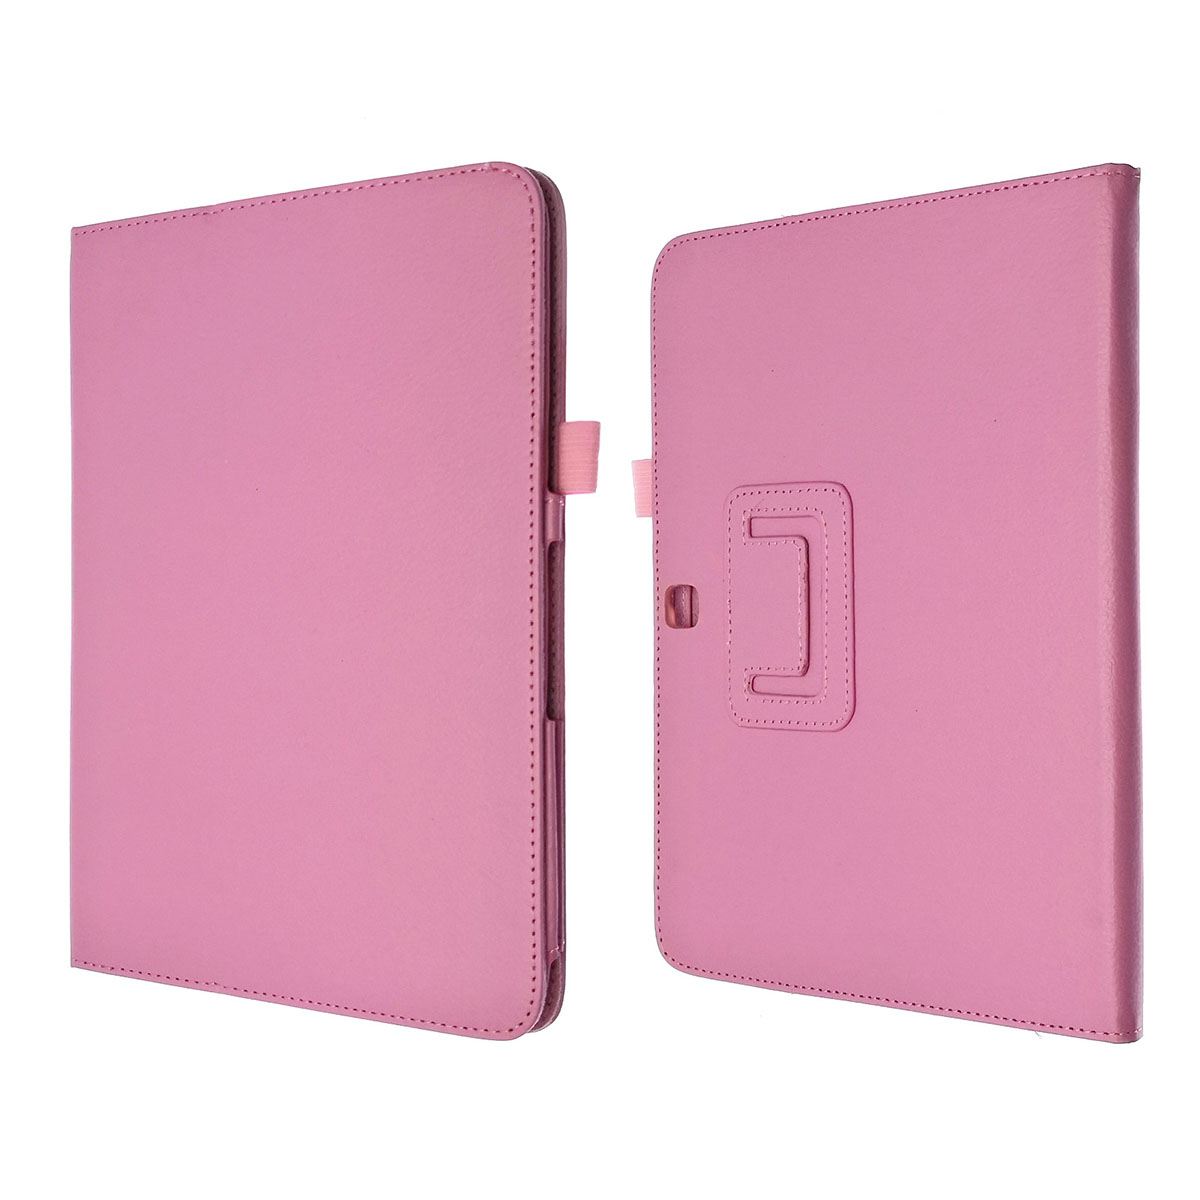 Чехол книжка для SAMSUNG Galaxy Tab 4 10.1 (SM-T530), экокожа, цвет розовый.